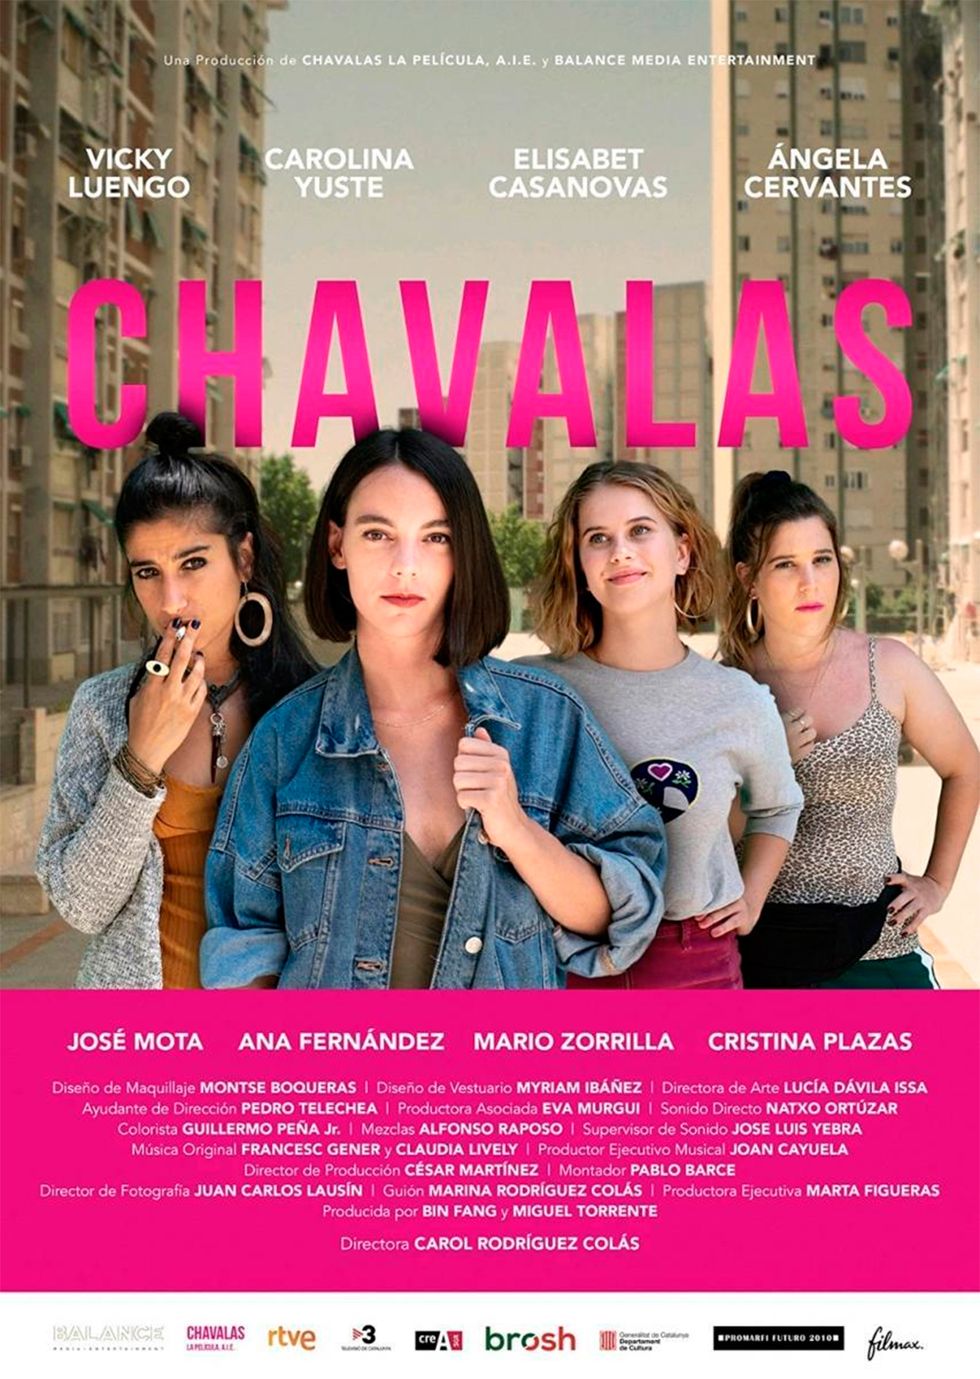 película "chavalas" se estrena em cines el 3 de septiembre de 2021